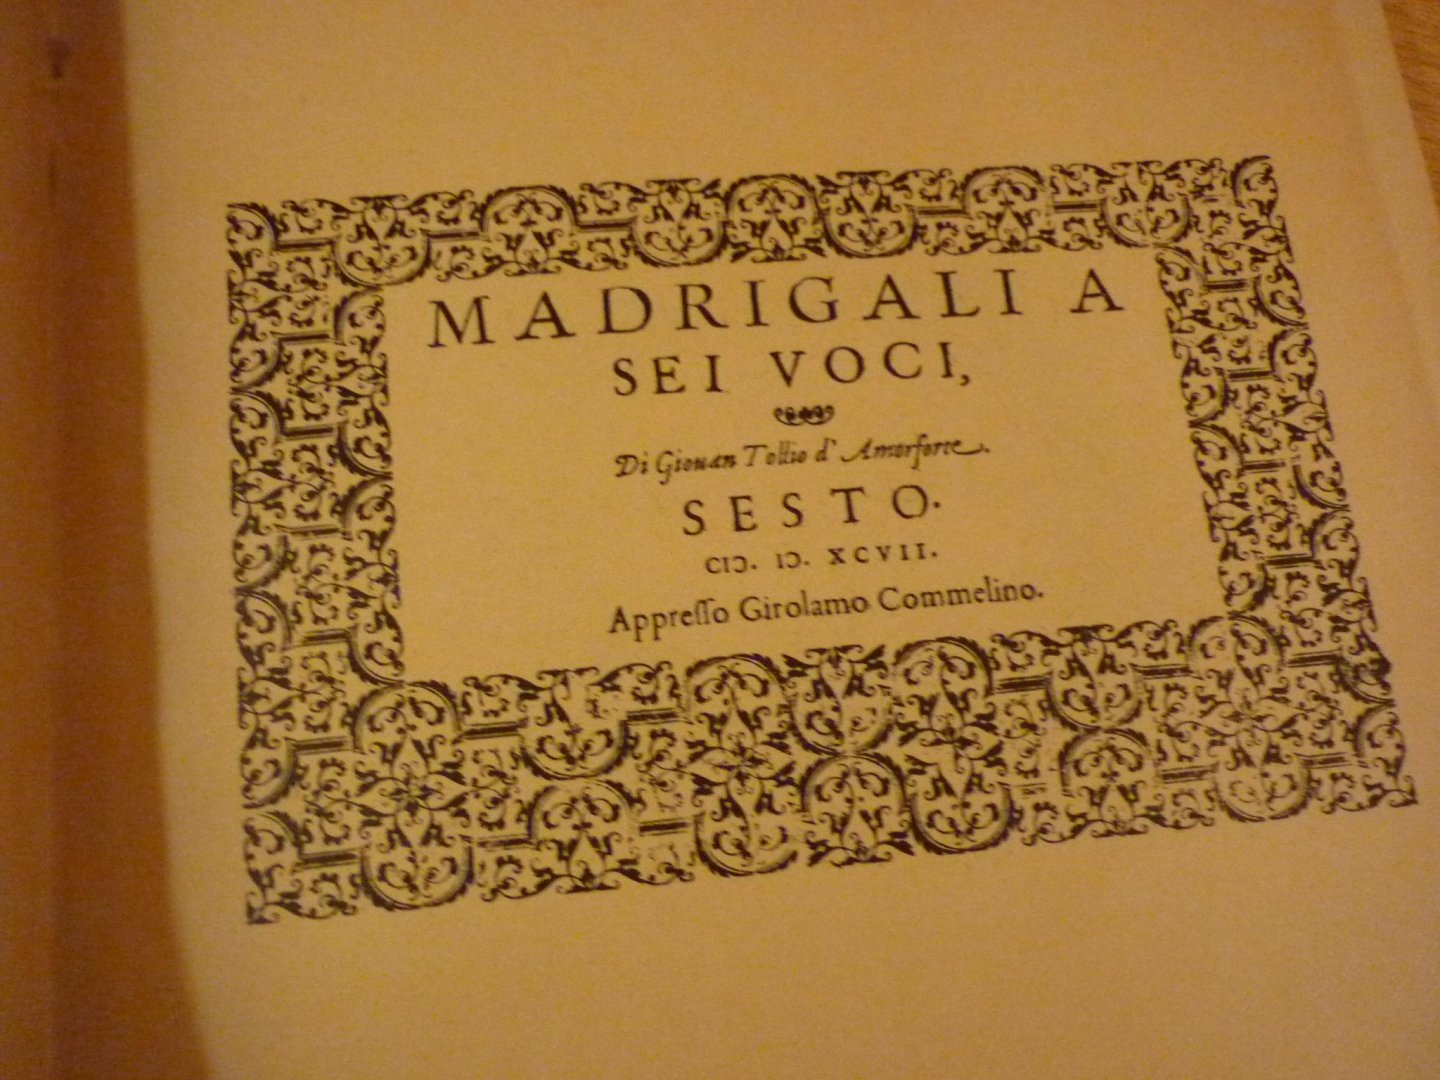 Tollius; Jan - Zesstemmige Madrigalen; Naar de uitgave van 1597 in partituur gebracht en opnieuw uitgegeven door Max Seiffert - Uitgave XXIV